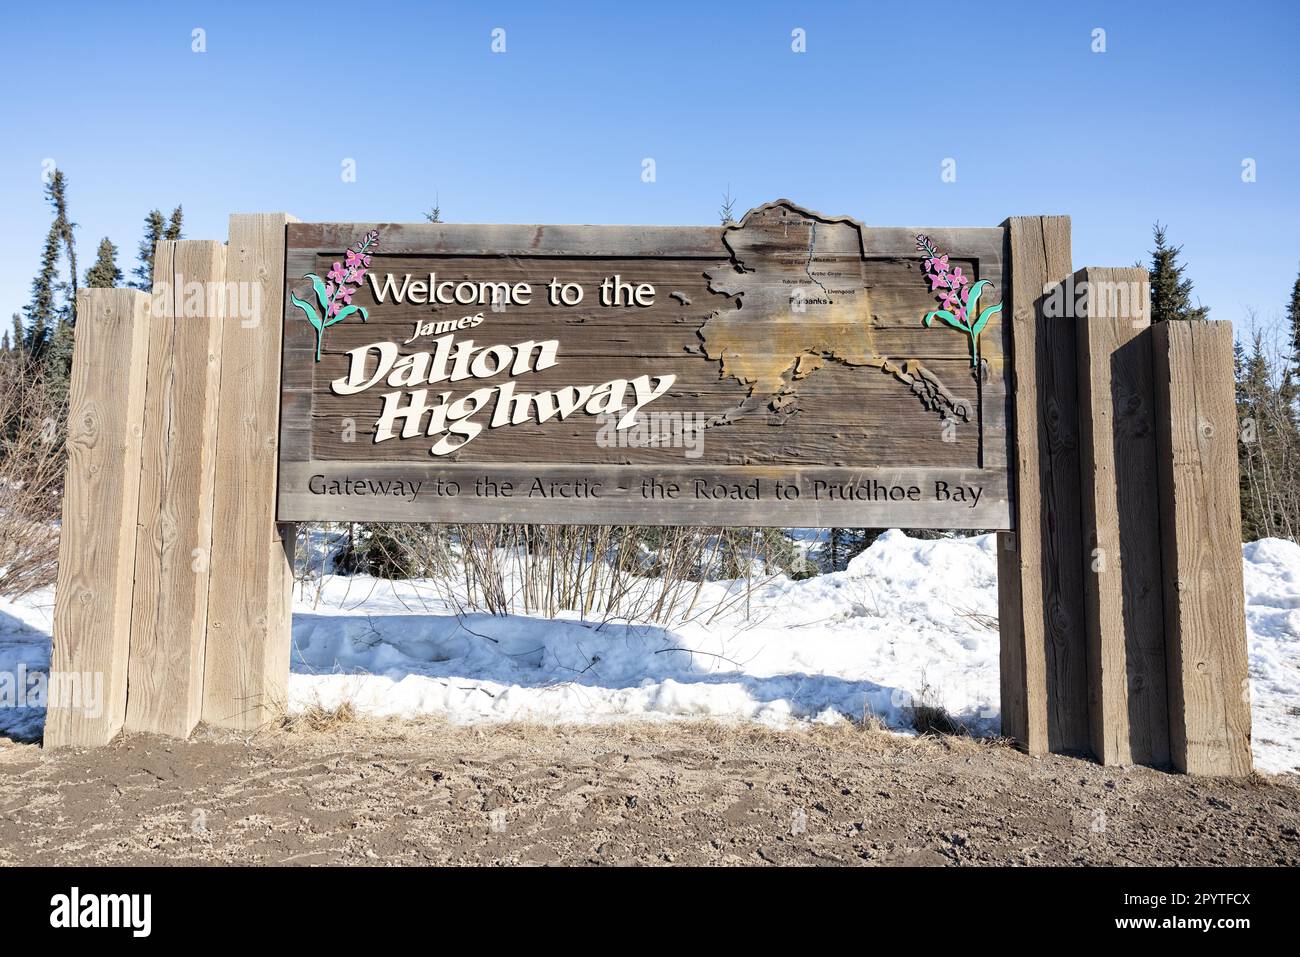 Bienvenido a la señal de Dalton Highway Foto de stock